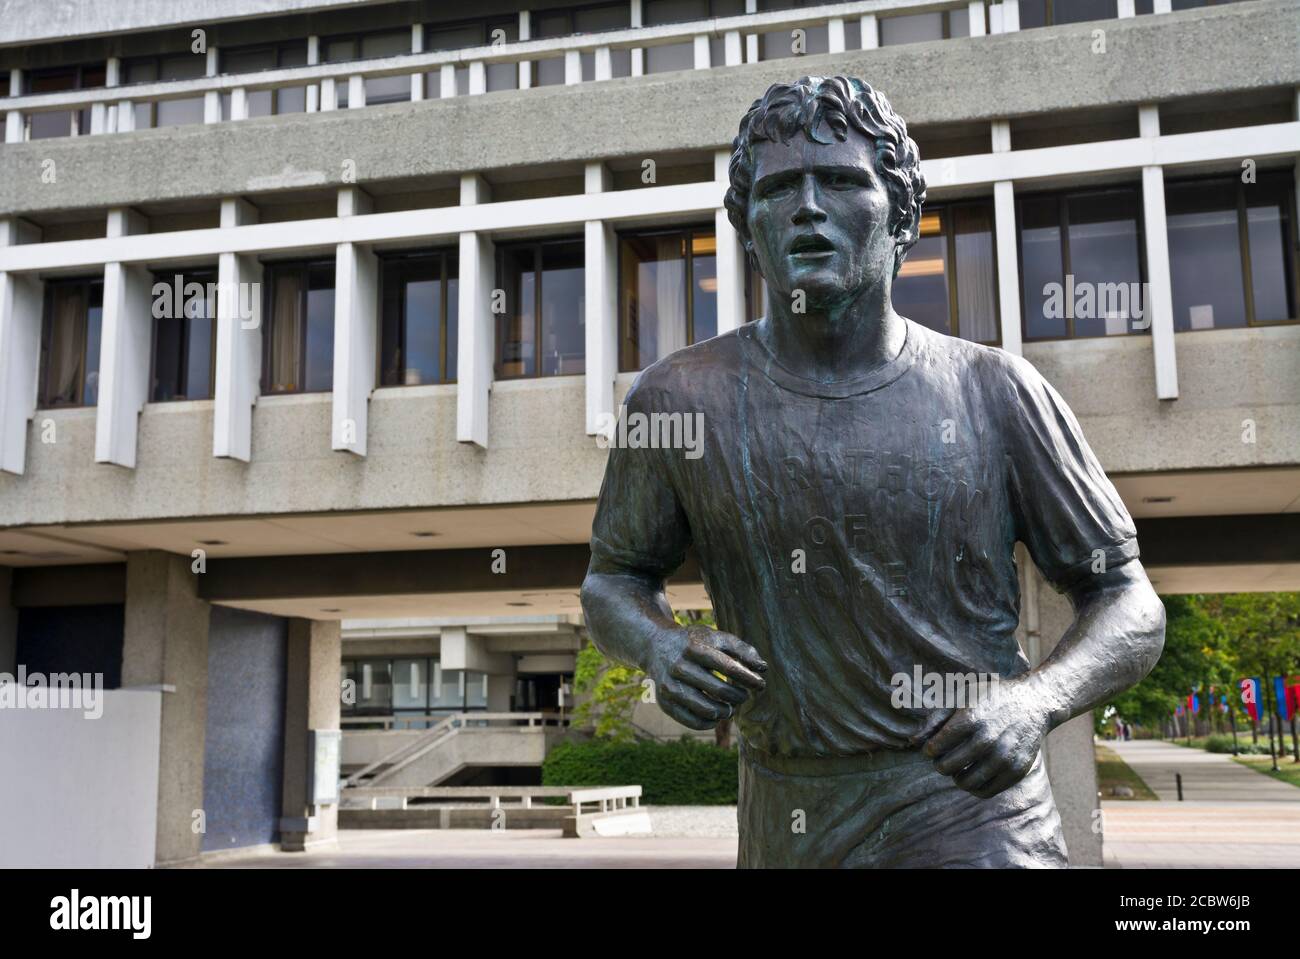 Burnaby, British Columbia, Canada: Statua di Terry Fox che ricorda la sua maratona di speranza, alla Simon Fraser University University. Foto Stock